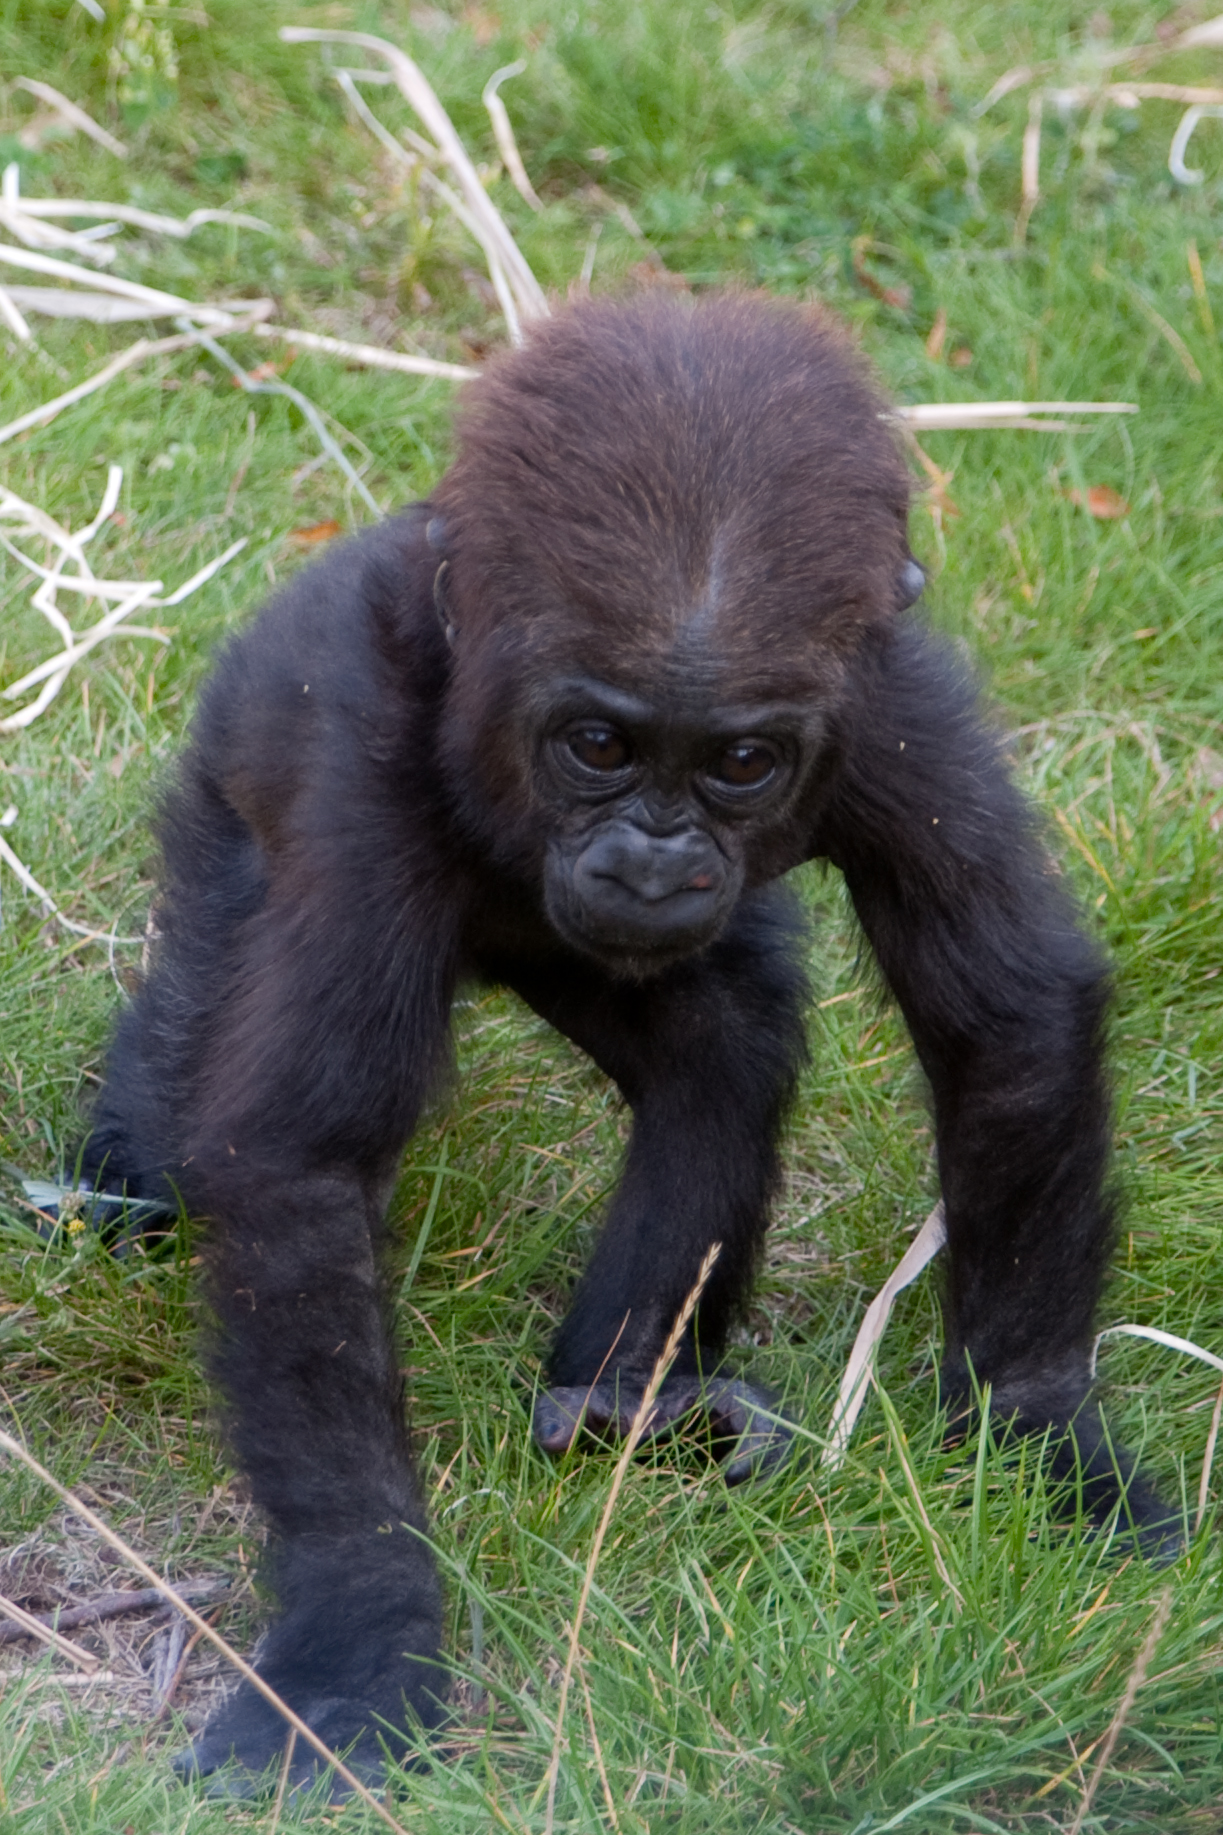 Đọc và Làm: Gặp gỡ Angela Baby Gorilla, Người cũng đang "trú ẩn tại chỗ"